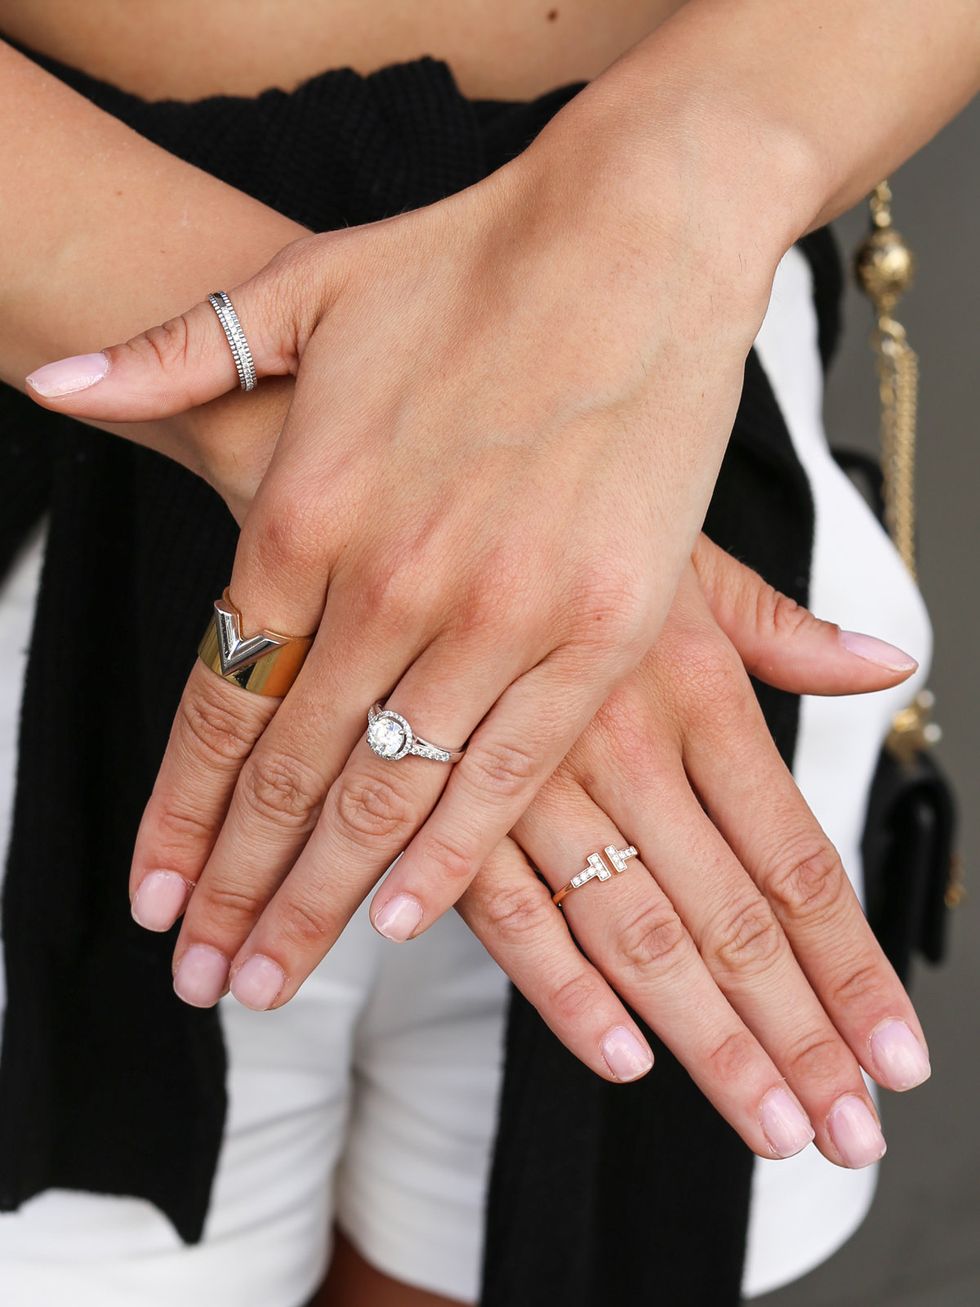 Nail, Finger, Manicure, Nail care, Ring, Hand, Cosmetics, Wedding ring, Nail polish, Engagement ring, 